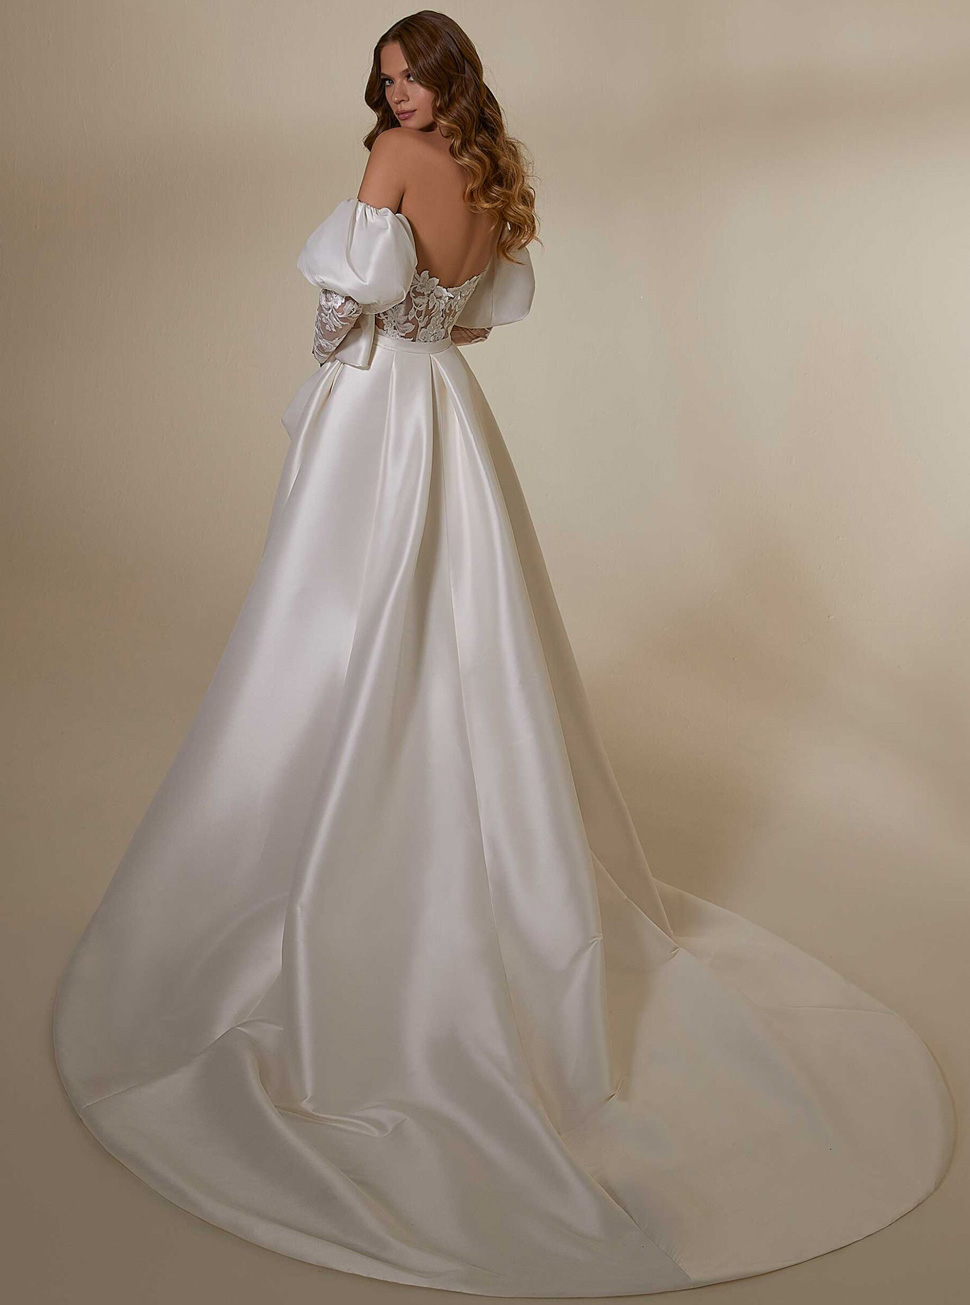 豪华两件套厚缎大拖尾欧式新娘婚纱礼服批发定制HS9980